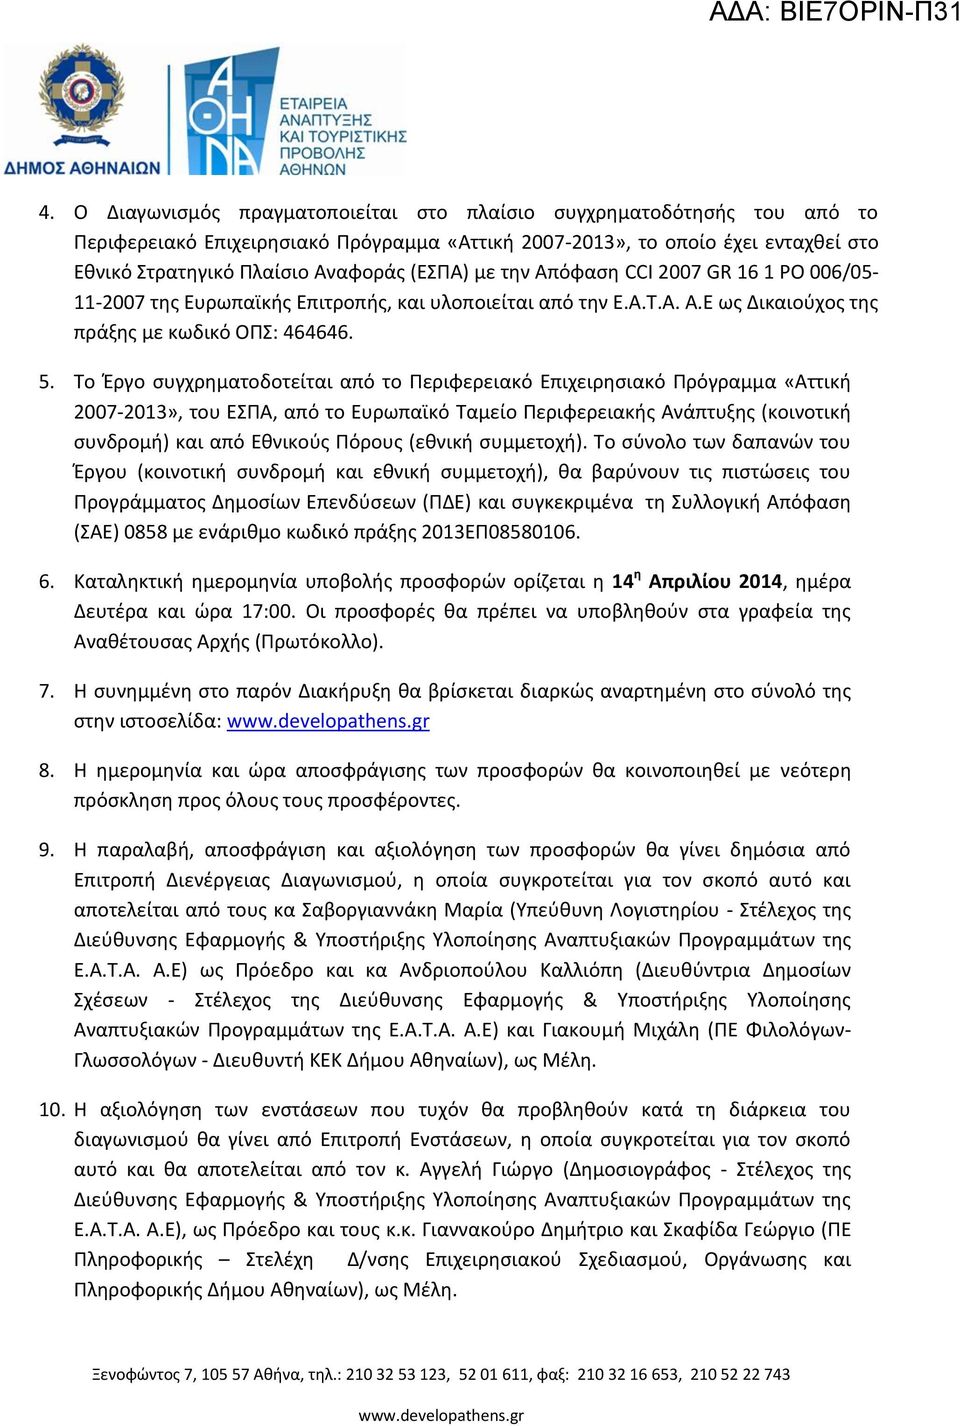 με την Απόφαση CCI 2007 GR 16 1 PO 006/05-11-2007 της Ευρωπαϊκής Επιτροπής, και υλοποιείται από την Ε.Α.Τ.Α. Α.Ε ως Δικαιούχος της πράξης με κωδικό ΟΠΣ: 464646. 5.